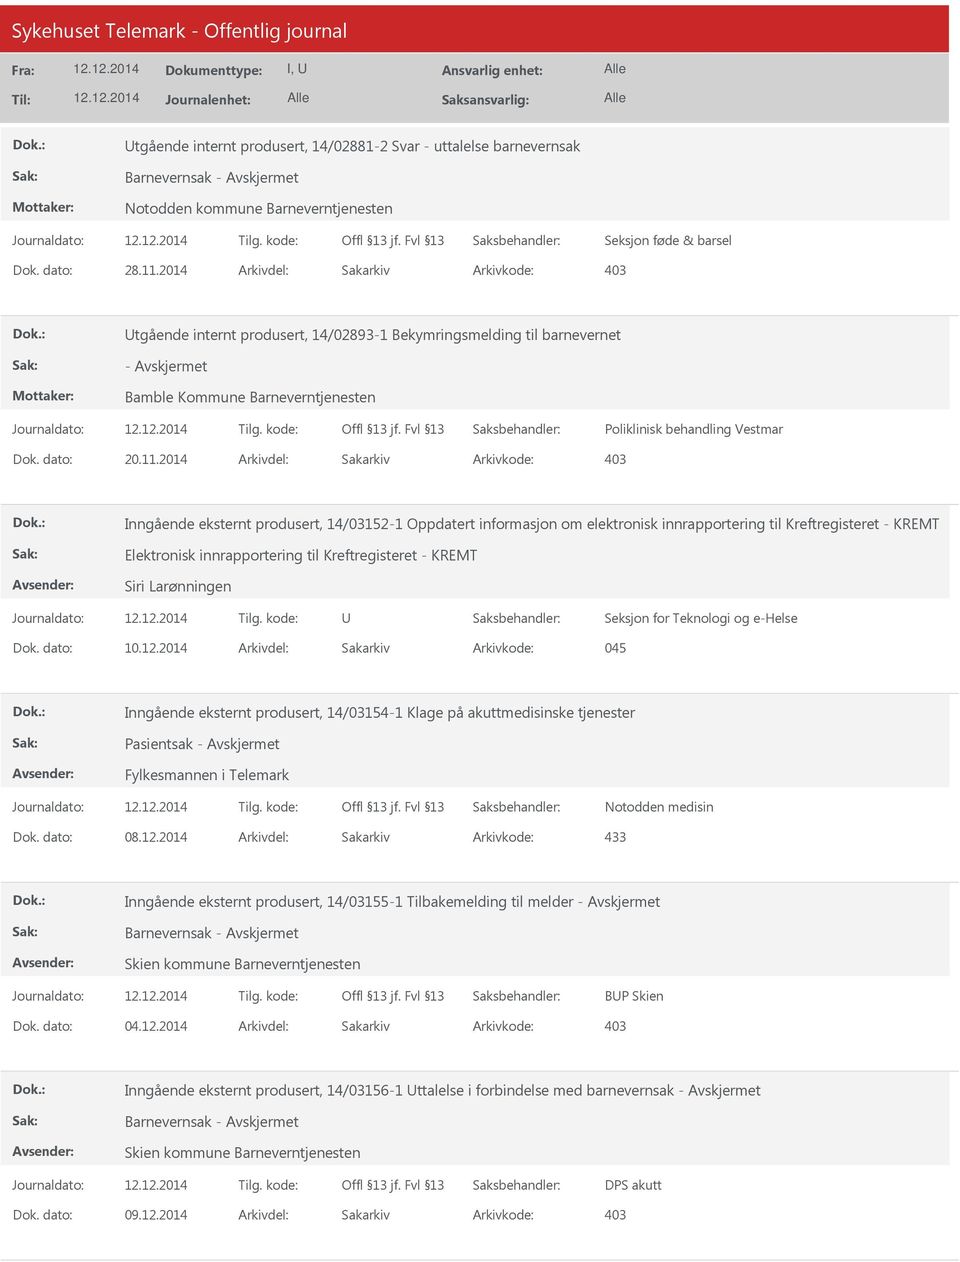 2014 Arkivdel: Sakarkiv Inngående eksternt produsert, 14/03152-1 Oppdatert informasjon om elektronisk innrapportering til Kreftregisteret - KREMT Elektronisk innrapportering til Kreftregisteret -